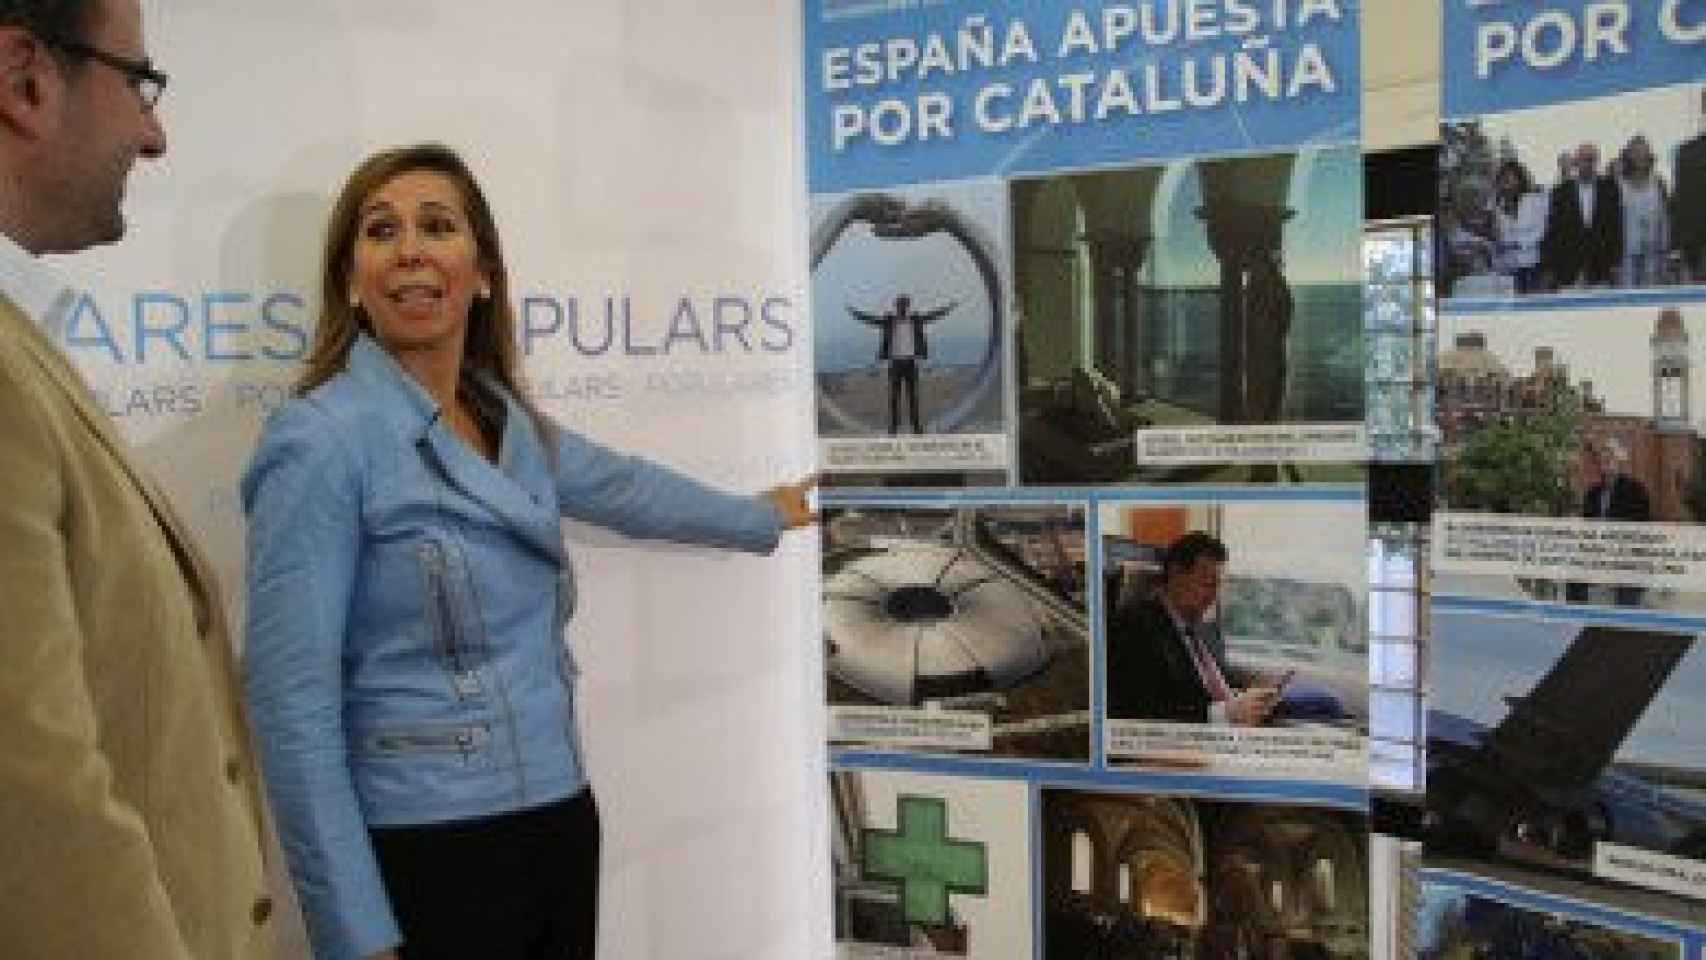 La presidenta del PP catalán, Alicia Sánchez-Camacho, en la presentación de la campaña 'España apuesta por Cataluña'